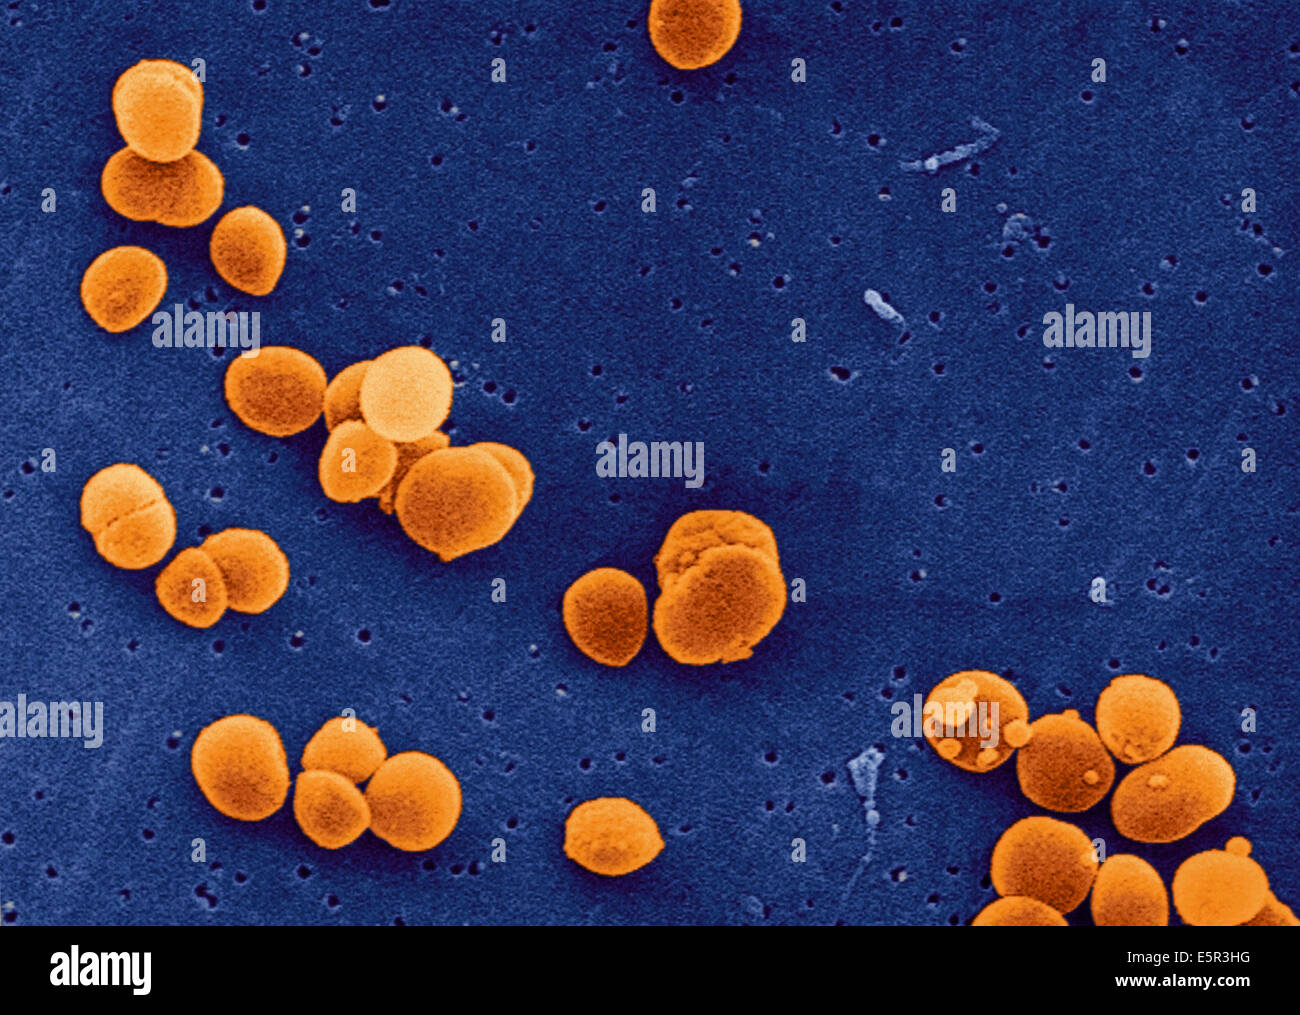 Staphylococcus aureus 5. Золотушный стафилококк. Золотистый стафилококк 3. Золотистый стафилококк с10. S. aureus золотистый стафилококк.